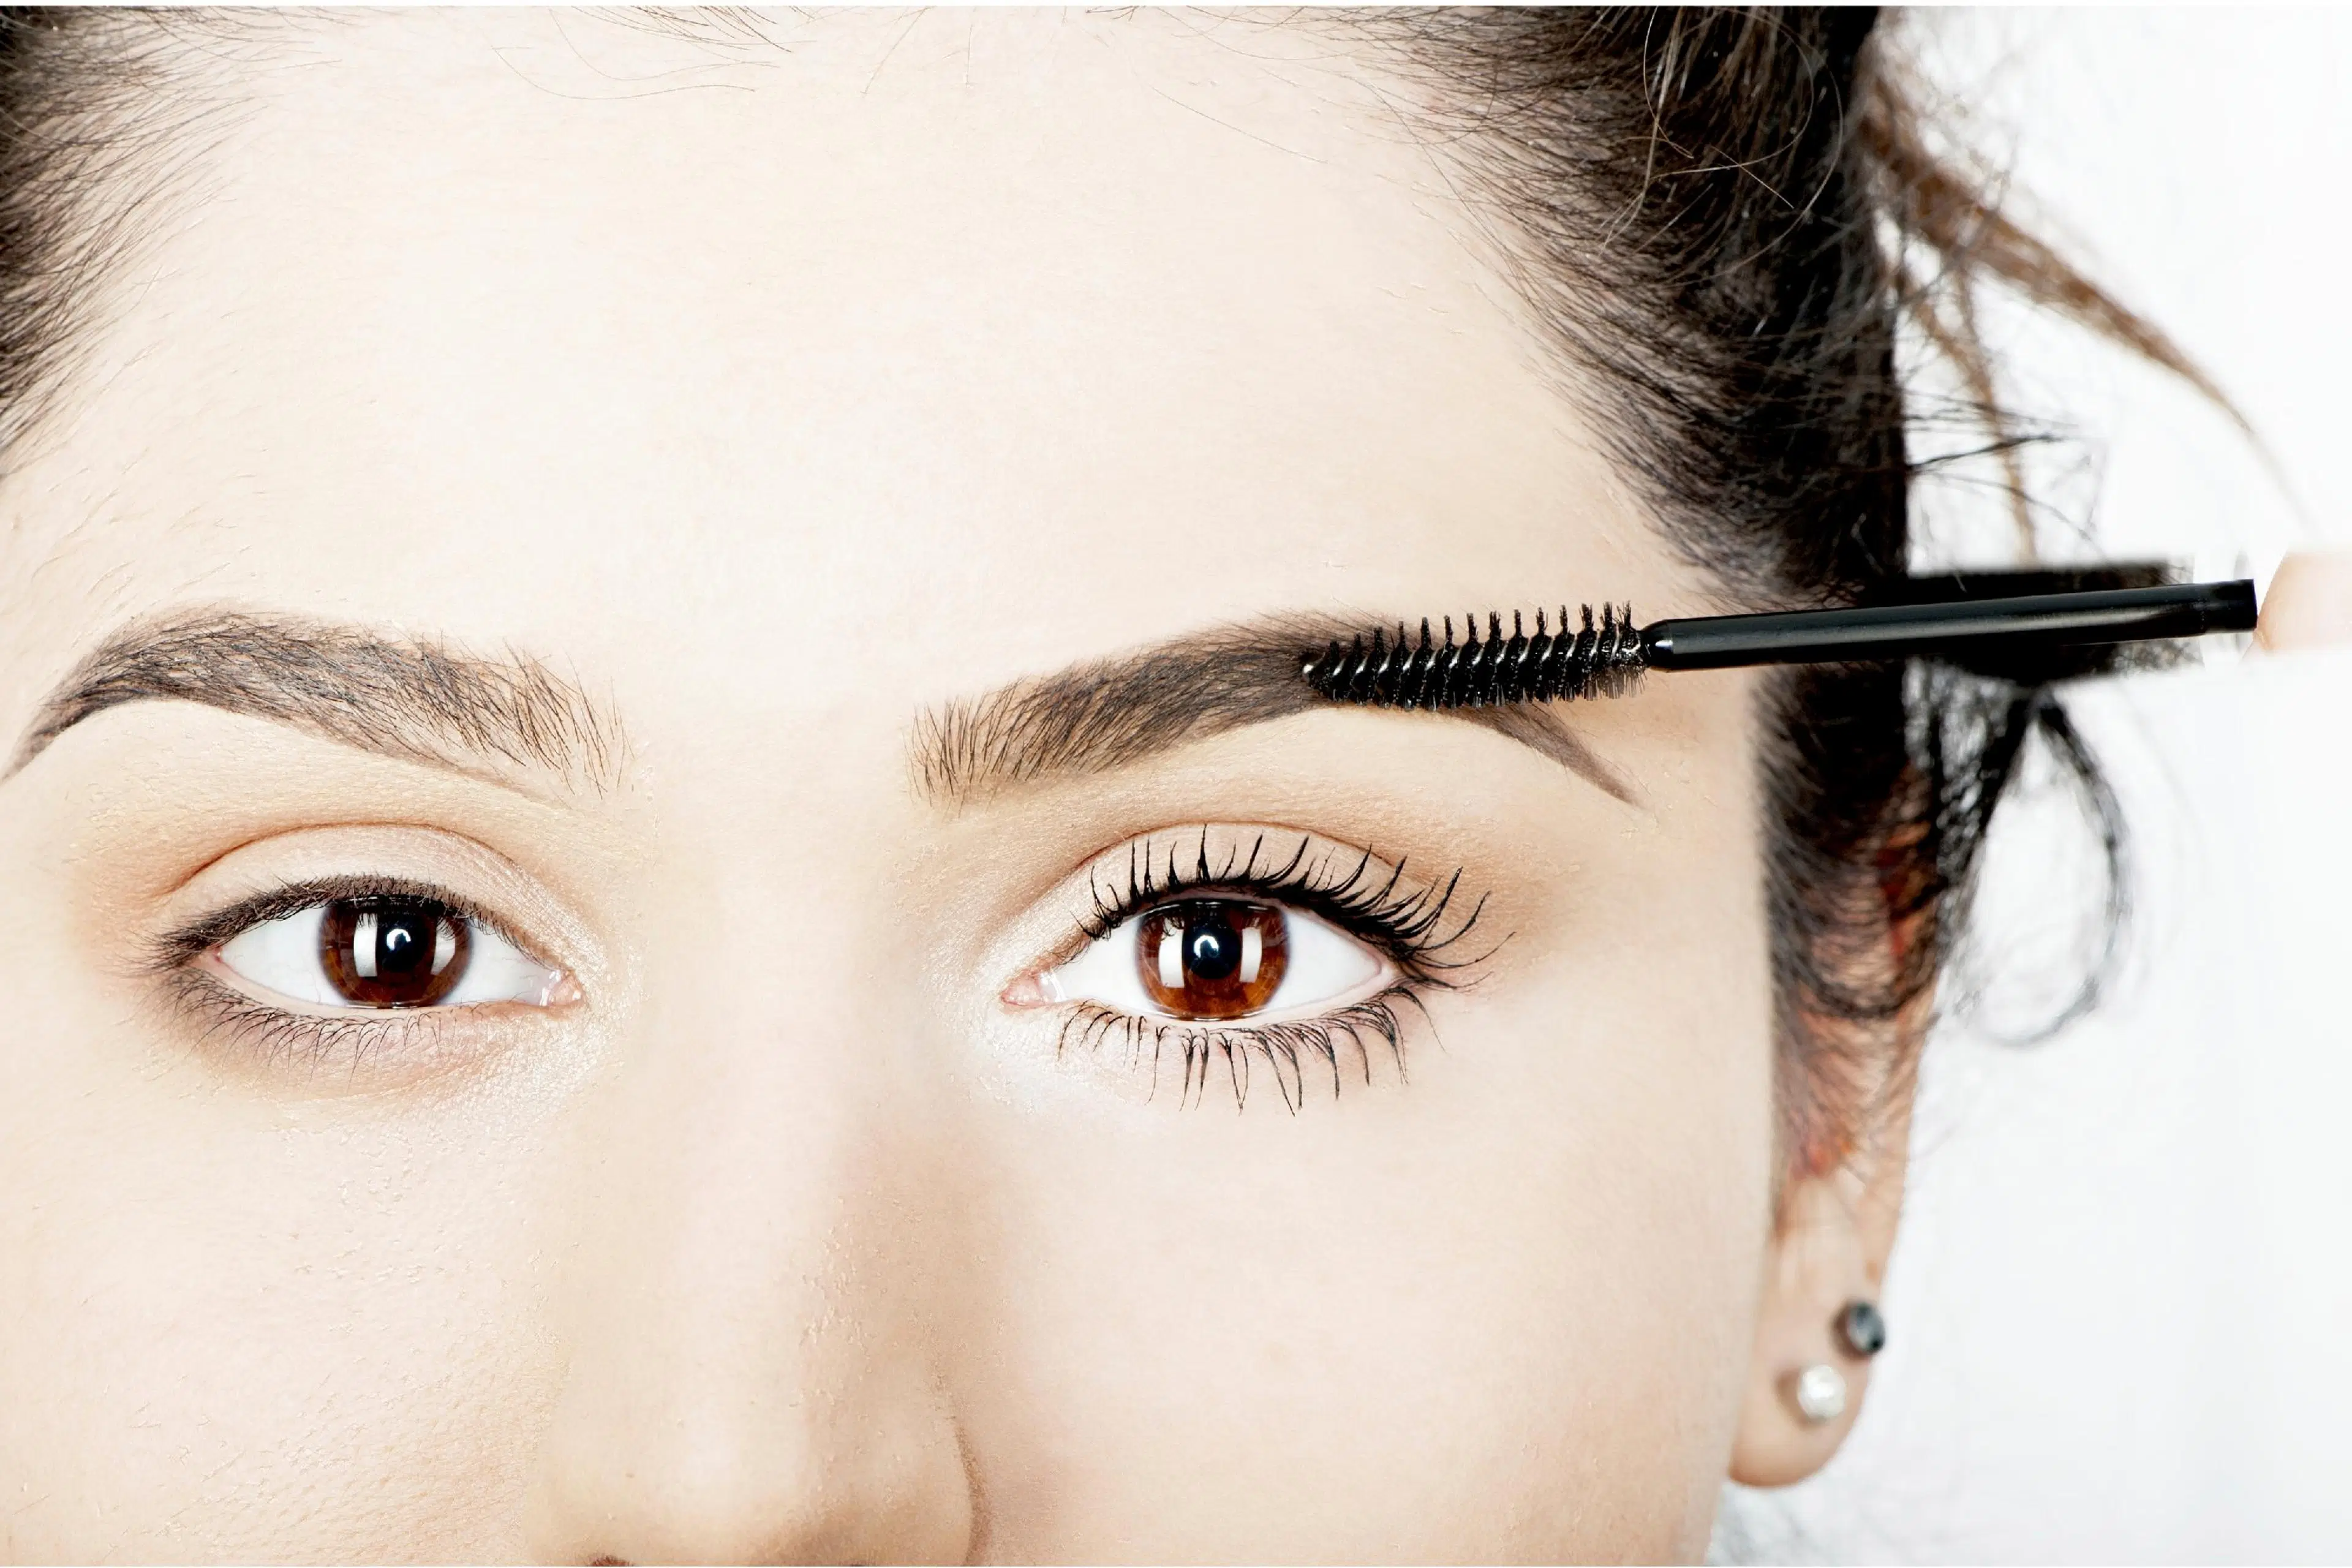 NYX Professional Makeup Control Freak Eye Brow Gel kulmageeli 9 g